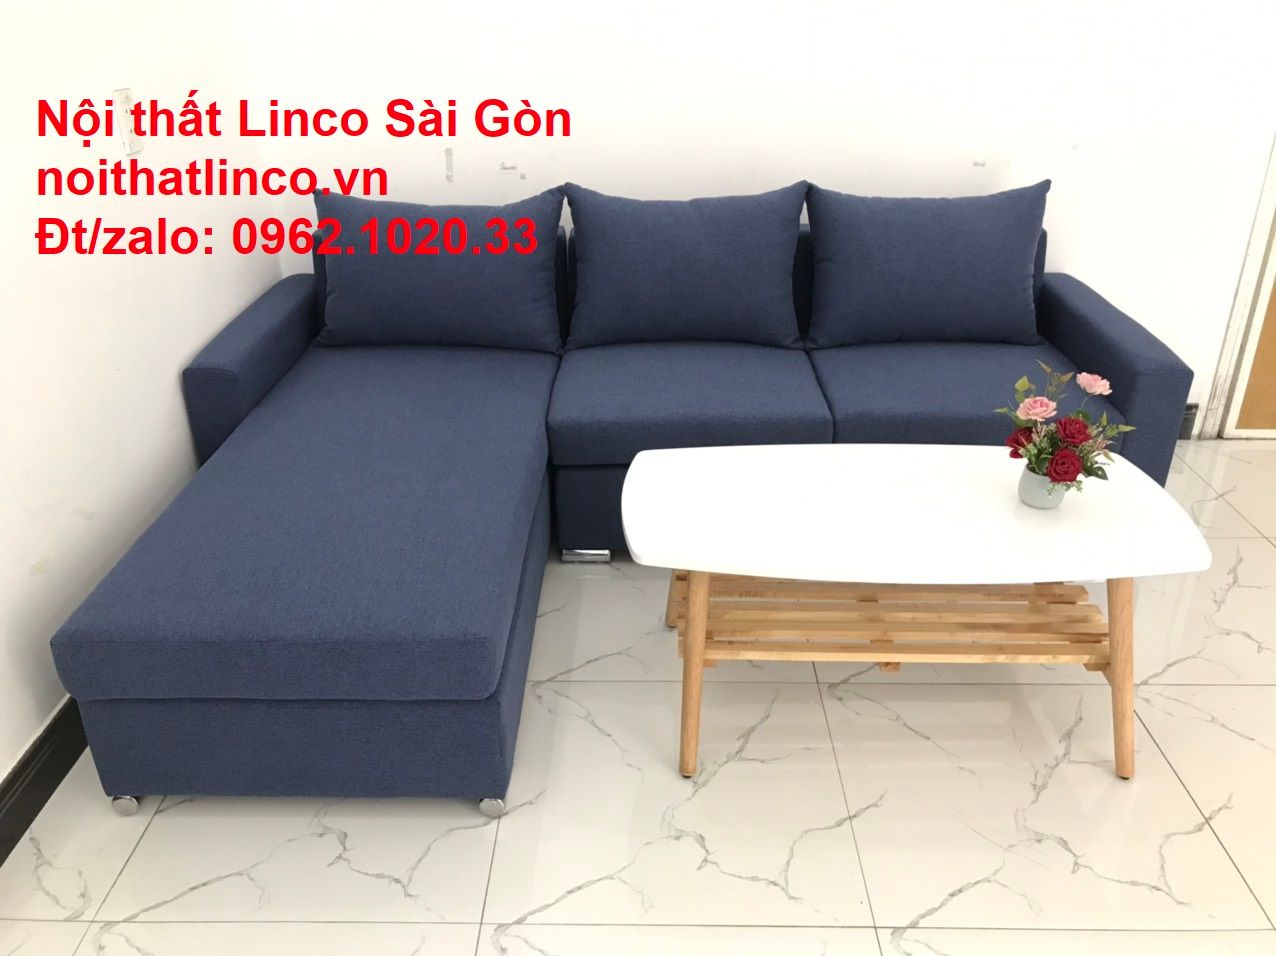  Bộ bàn ghế sofa góc L dài 2m2 x 1m6 màu xanh dương đậm giá rẻ 